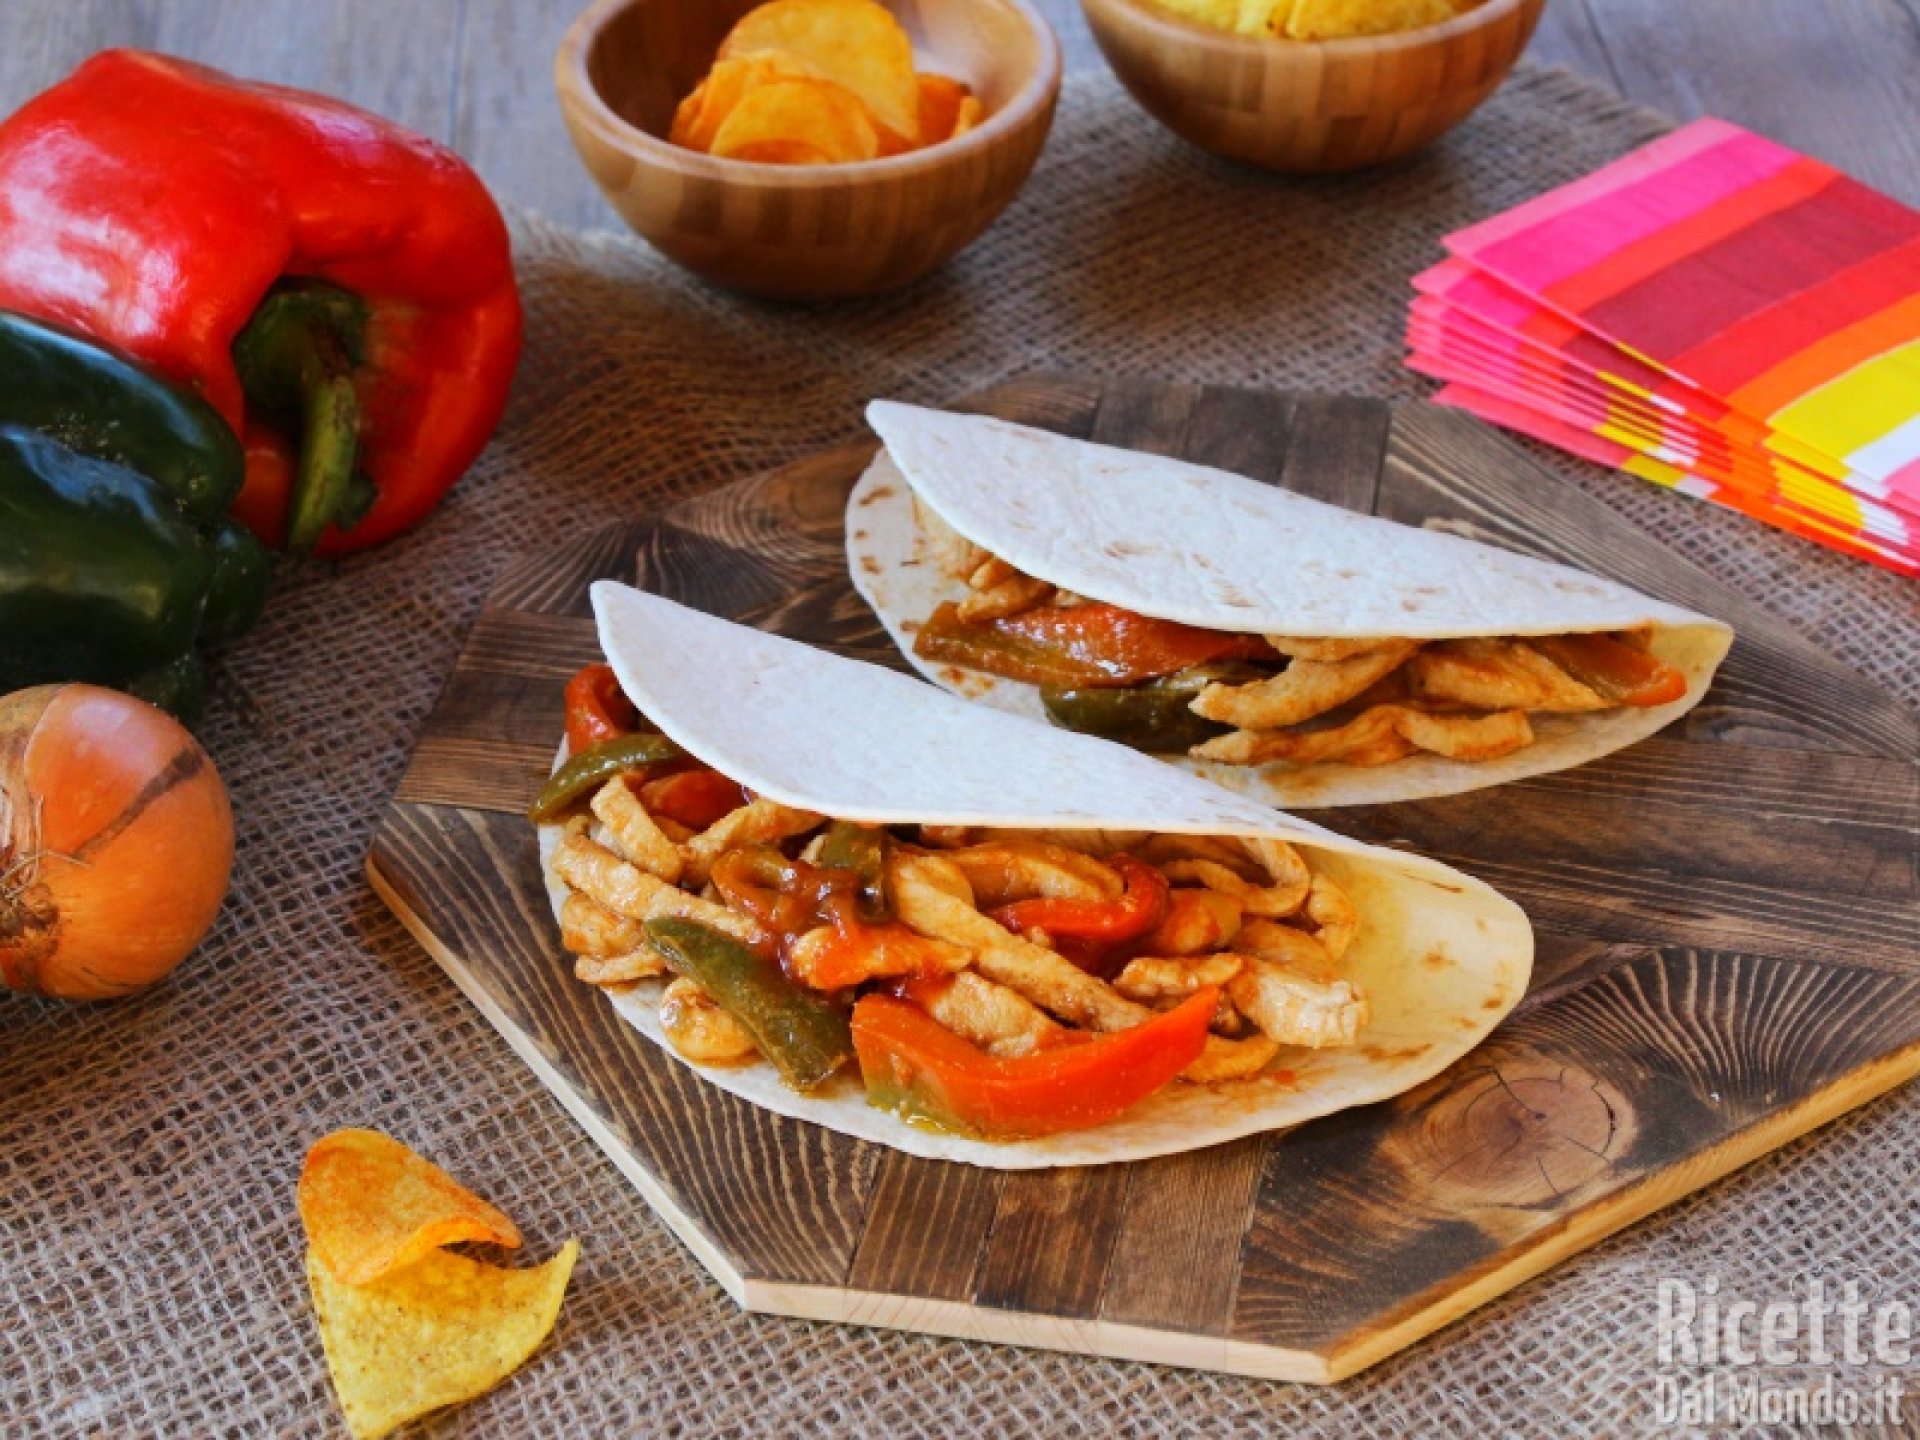 Tacos di pollo: la ricetta delle tortillas messicane con pollo e verdure